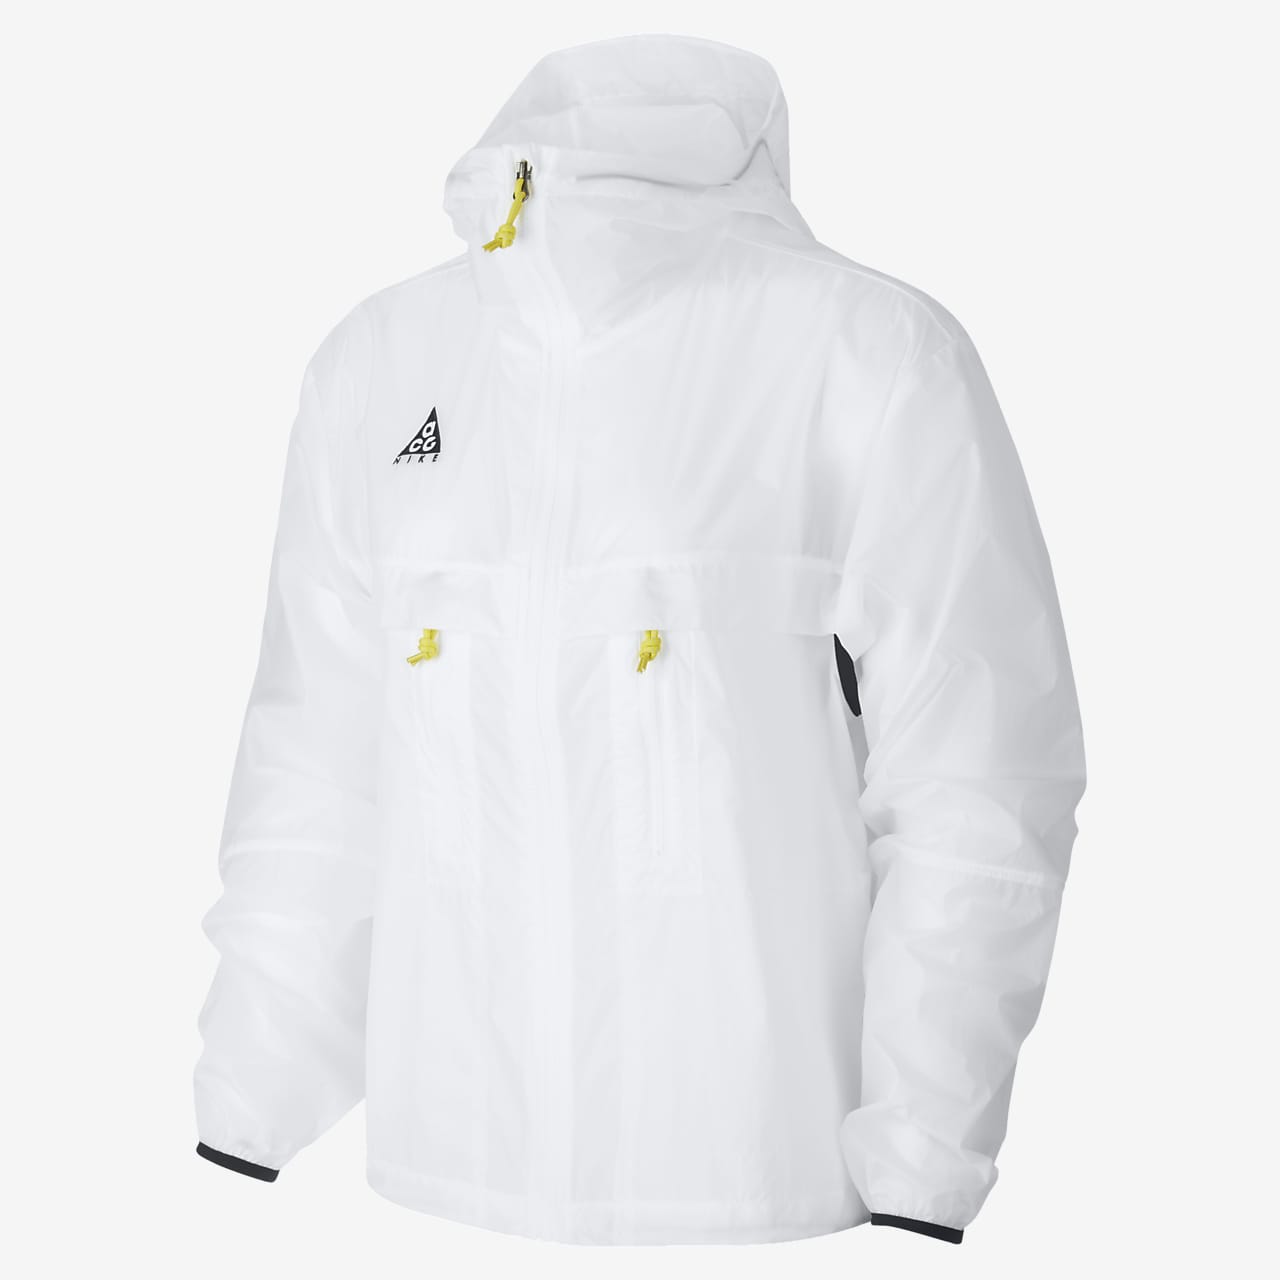 acg jacket white